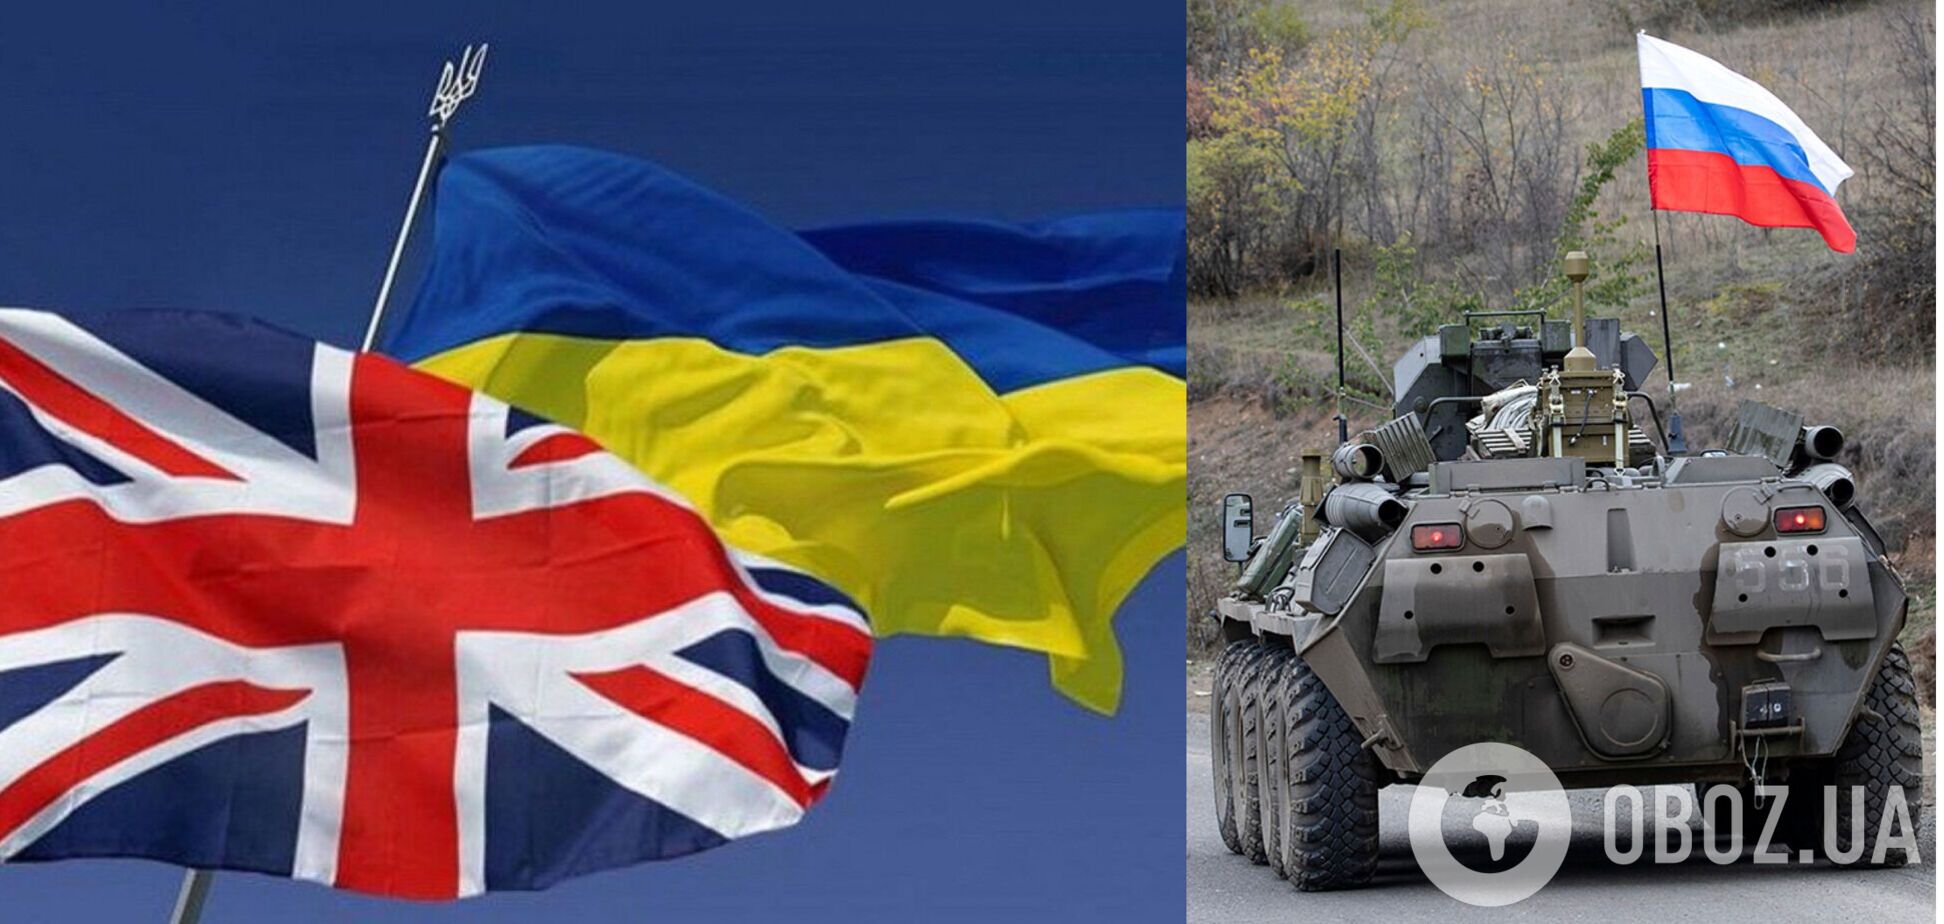 В Британии назвали Россию угрозой для мира и поддержали Украину. Документ